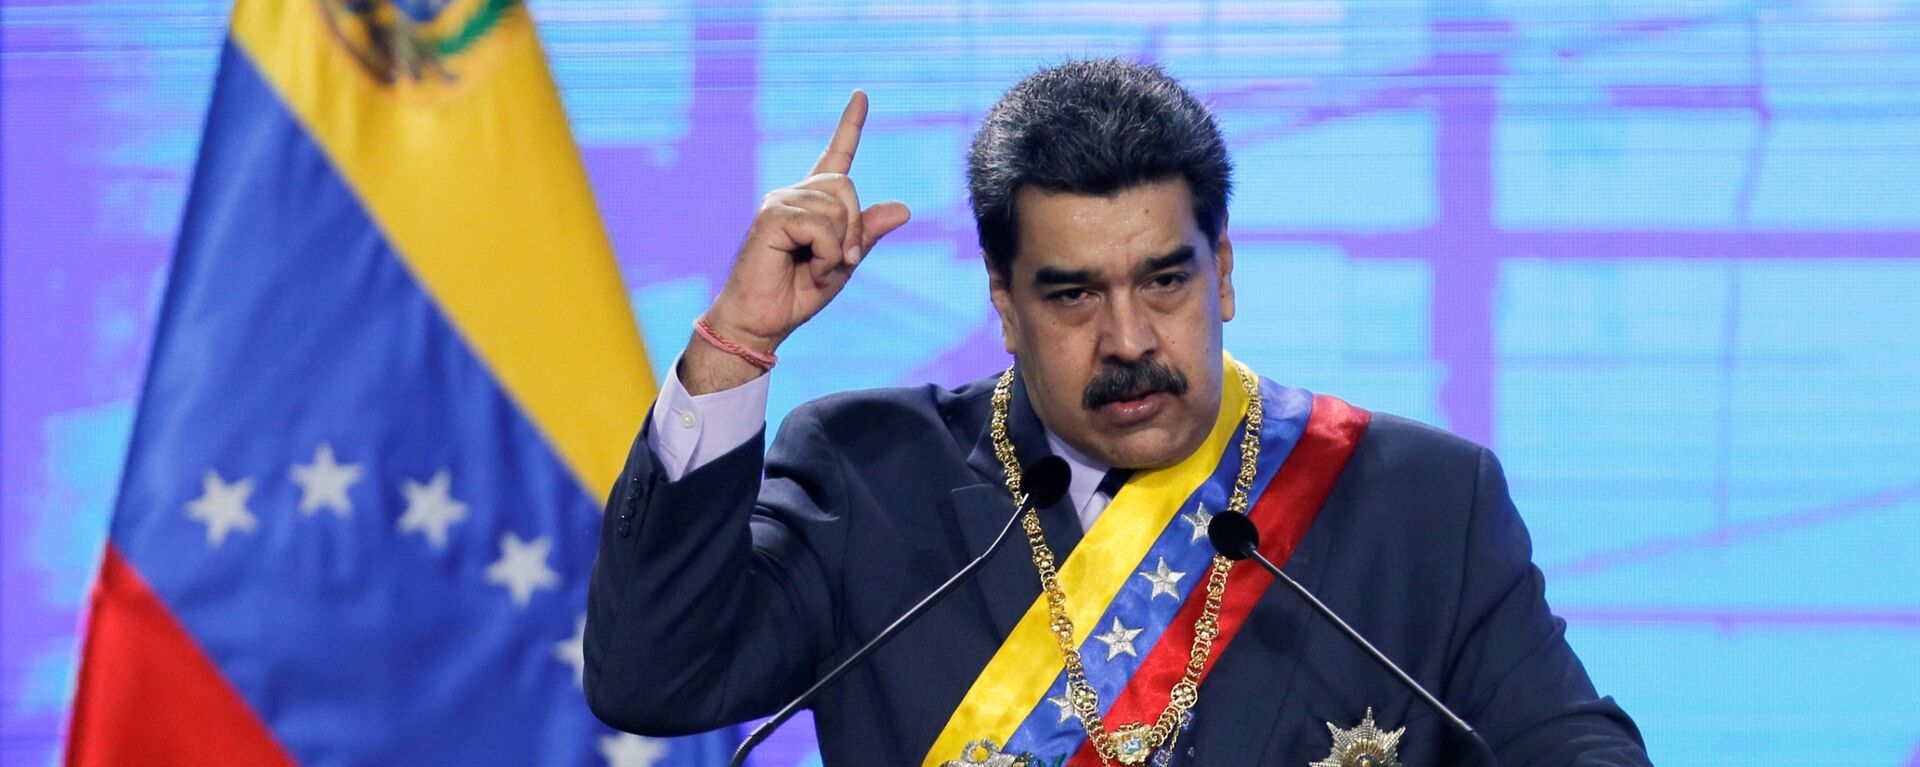 Nicolás Maduro, presidente de Venezuela - Sputnik Mundo, 1920, 27.01.2021